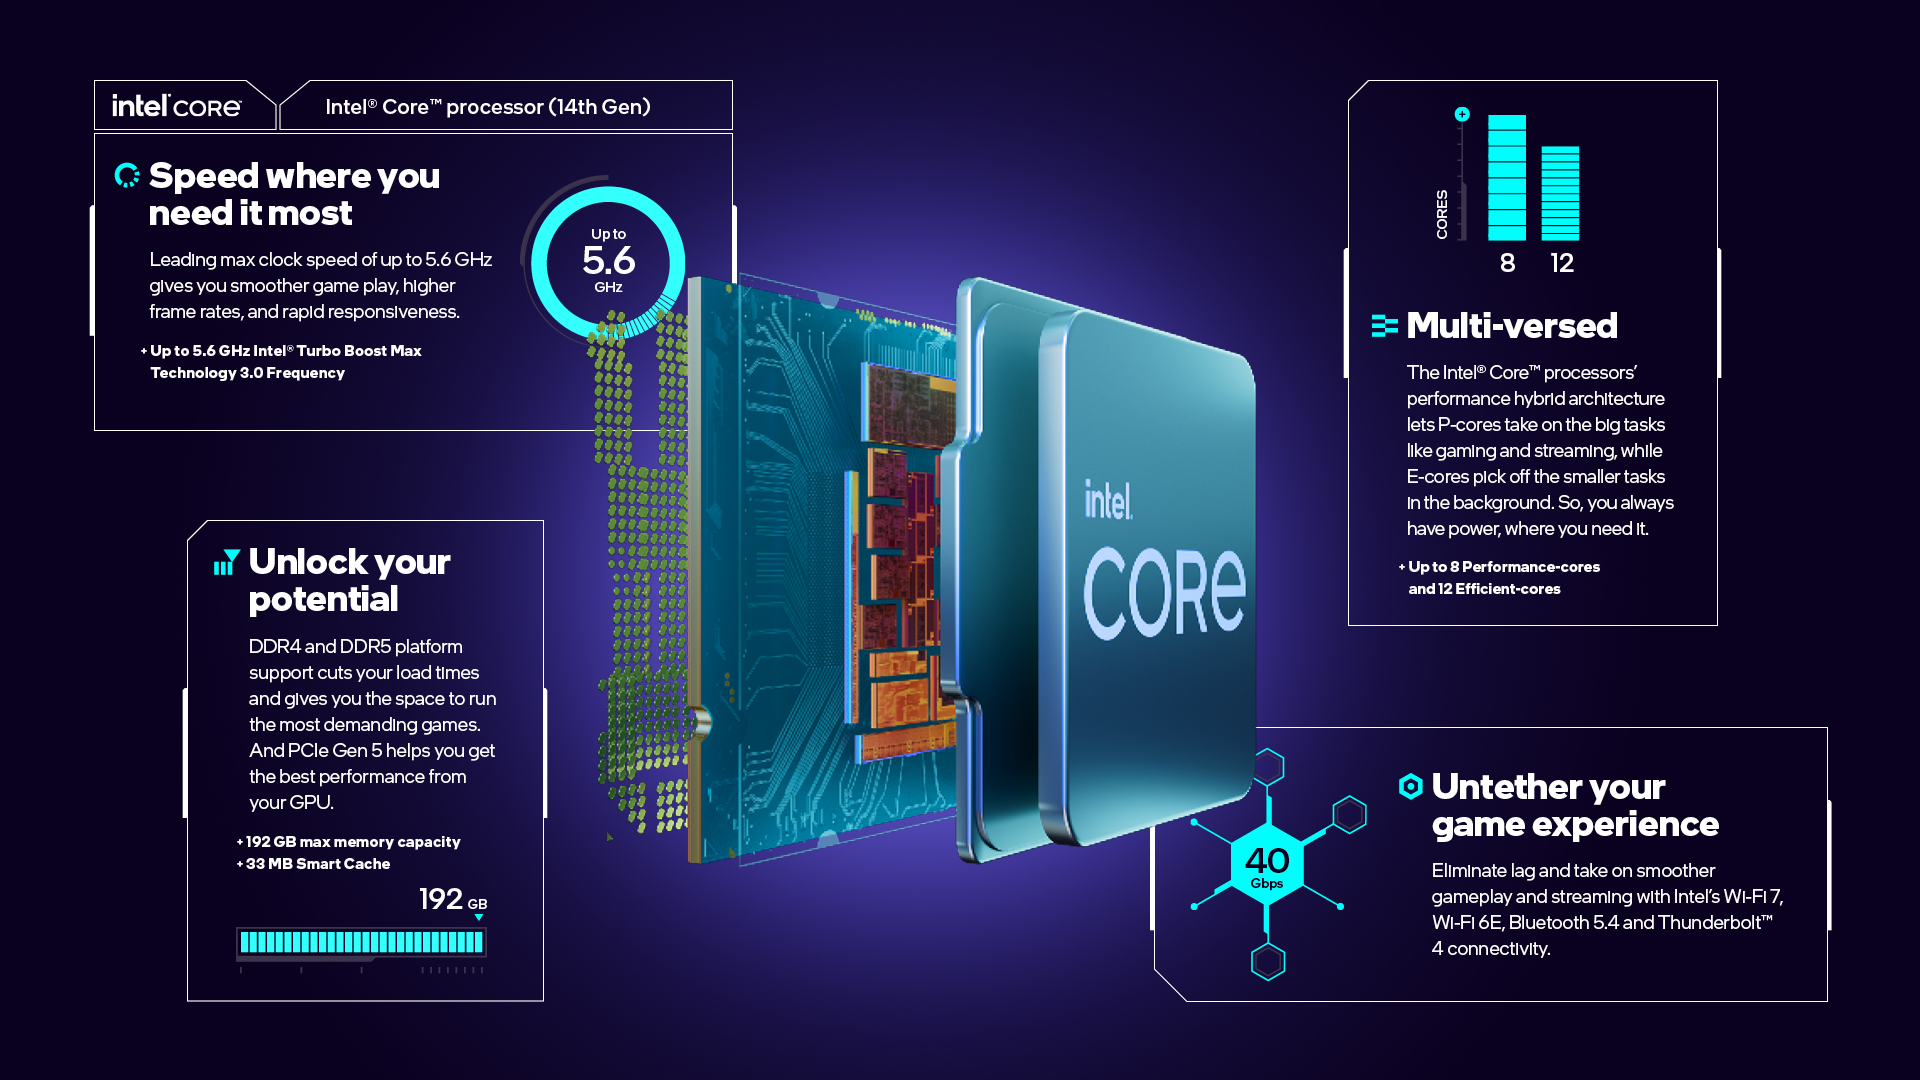 Intel Core i7-13700KF Gaming Desktop Processor 16 cores (8 P-cores + 8  E-cores) - Unlocked